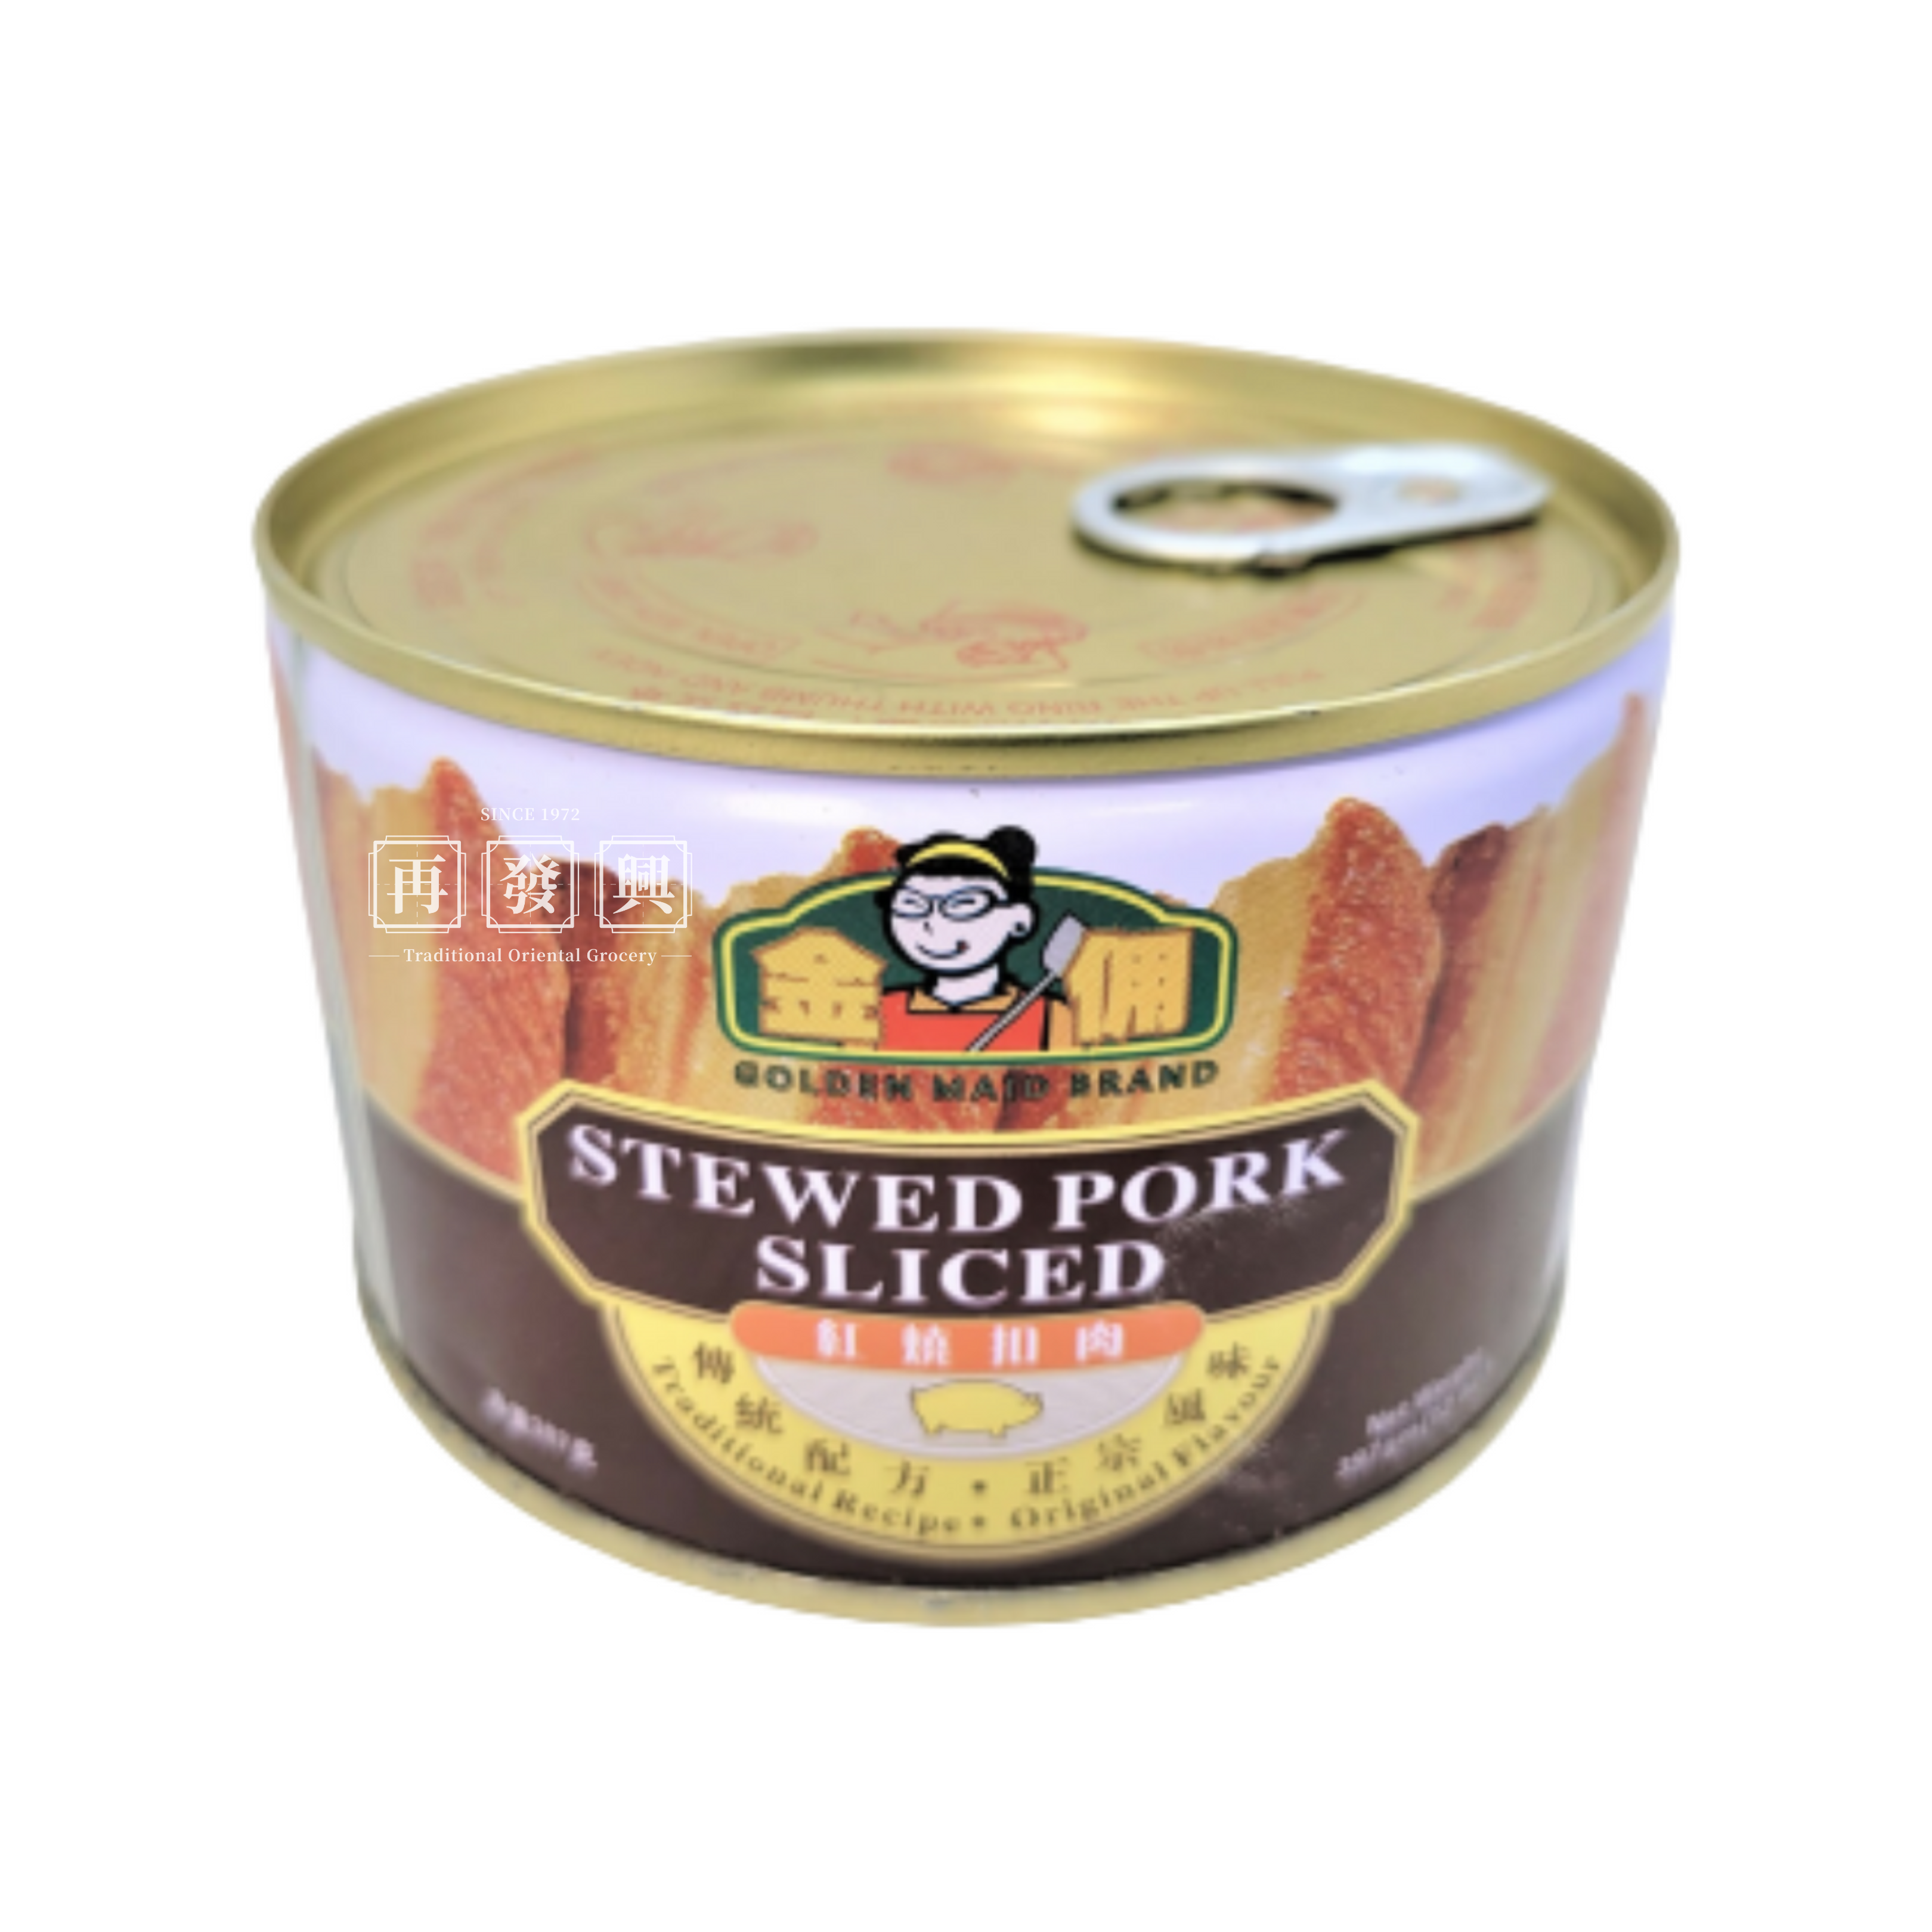 Golden Maid Stewed Pork Sliced 397g